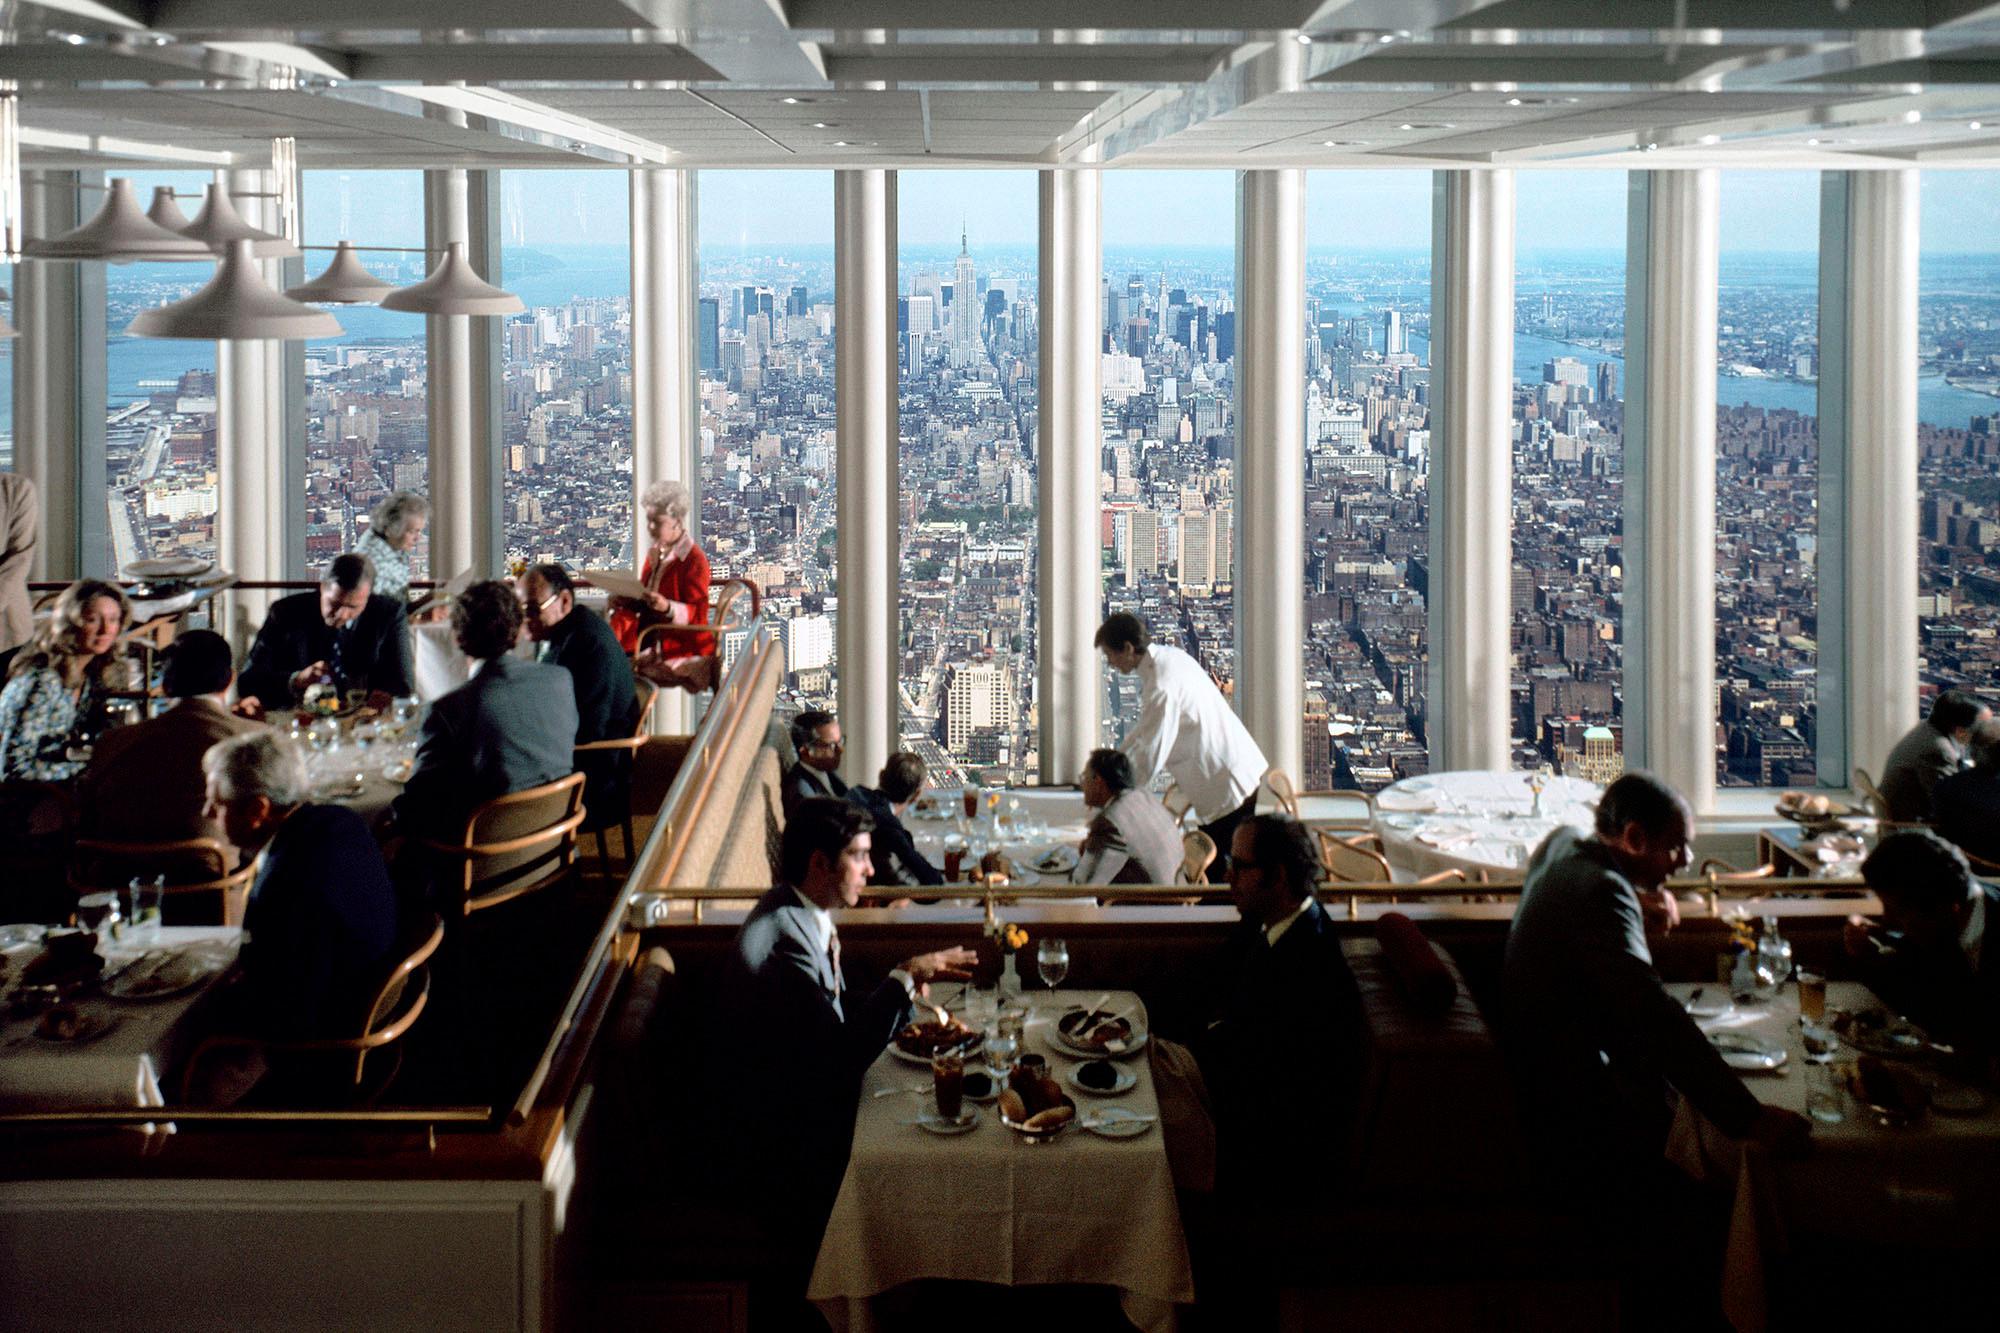 2000x1333, 363 Kb / ресторан, окно, Всемирный торговый центр, США, Нью-Йорк, башня, небоскреб